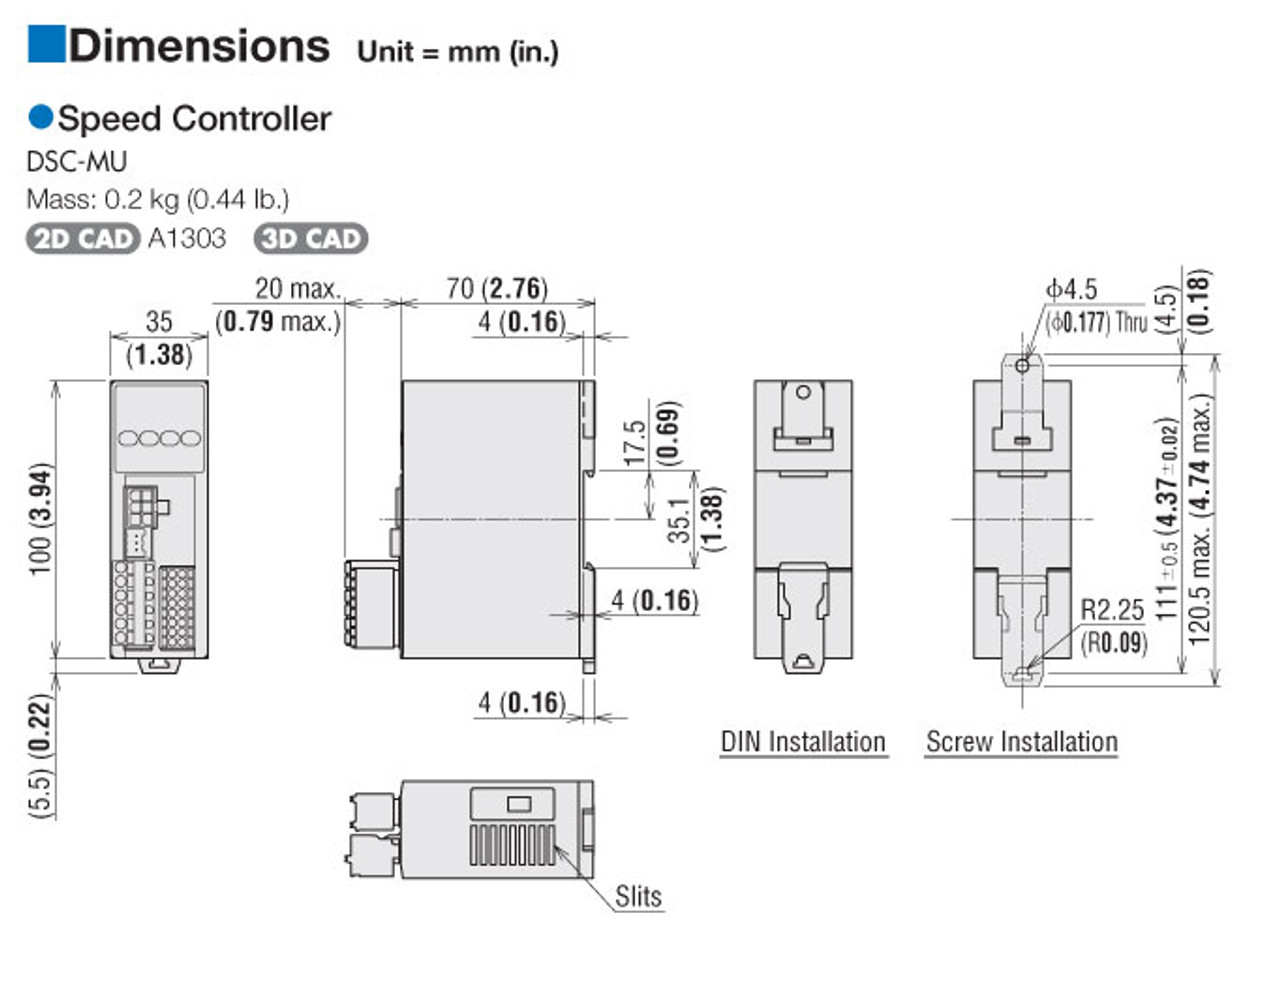 DSCI26UAM-50AV - Dimensions